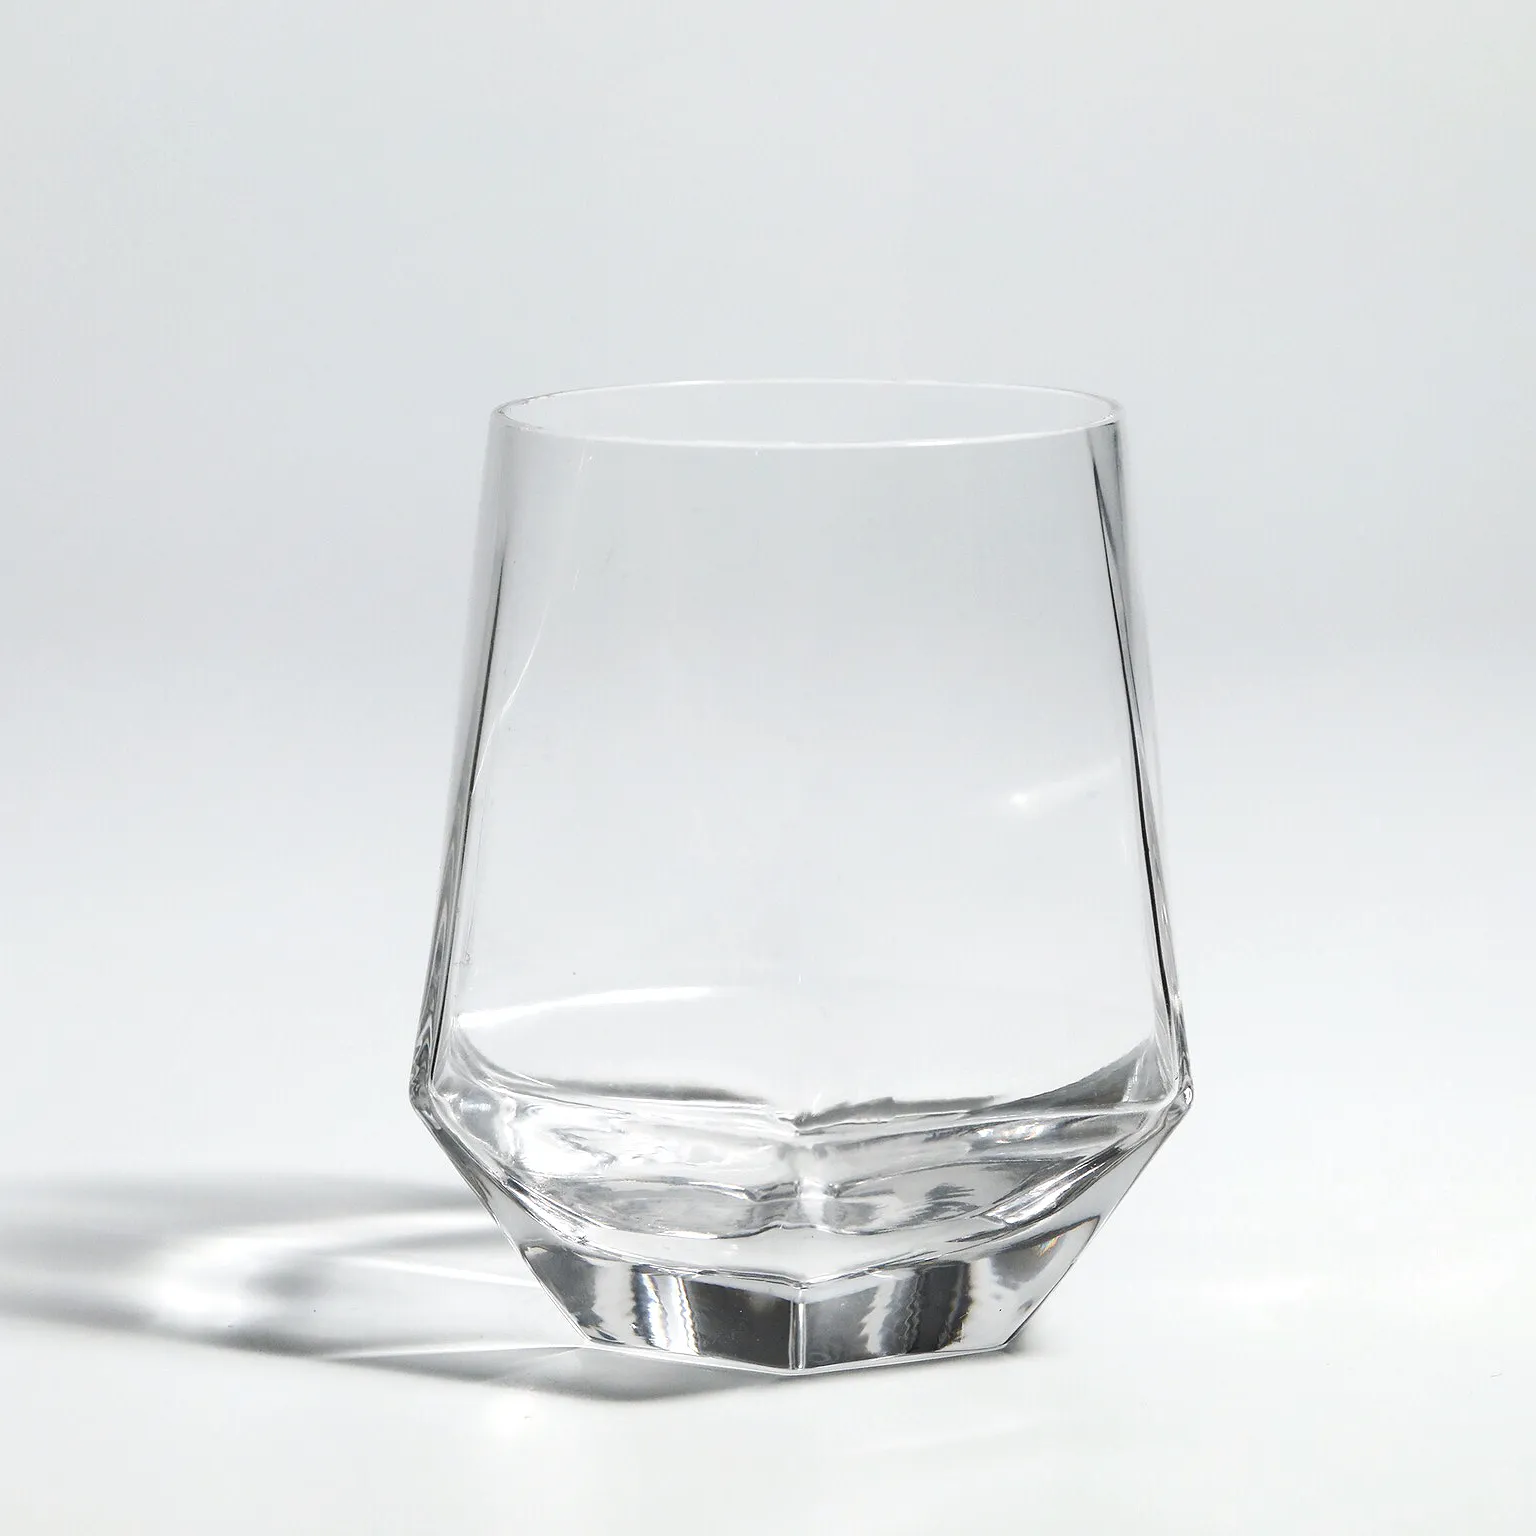 グラスマグウィスキーガラス高品質耐久性軽量高級六角形ダイヤモンドカップ鉛フリー